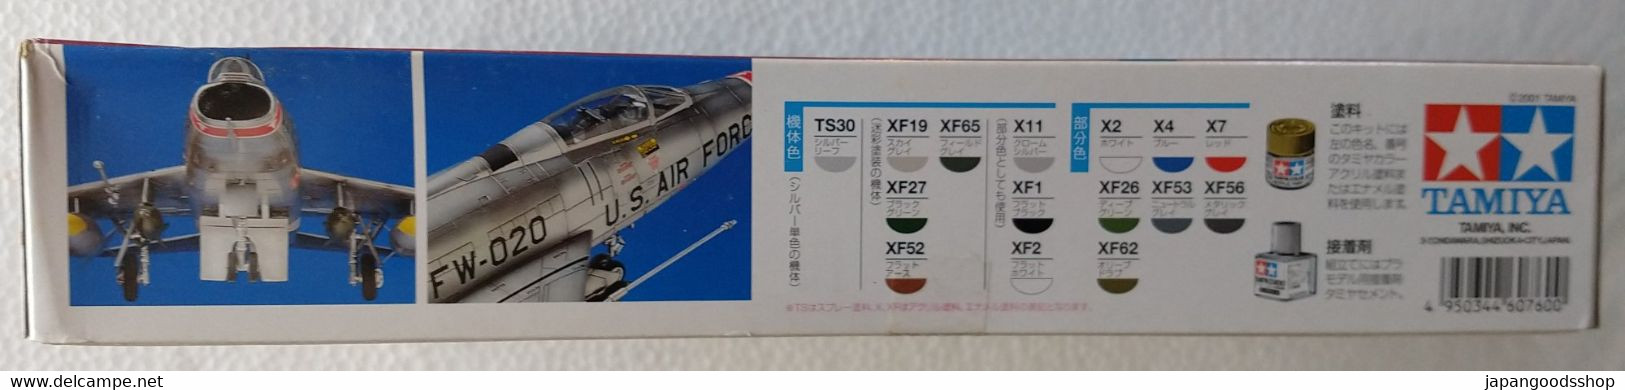 F-100D Super Sabre  1/72   ( Tamiya ) - Vliegtuigen